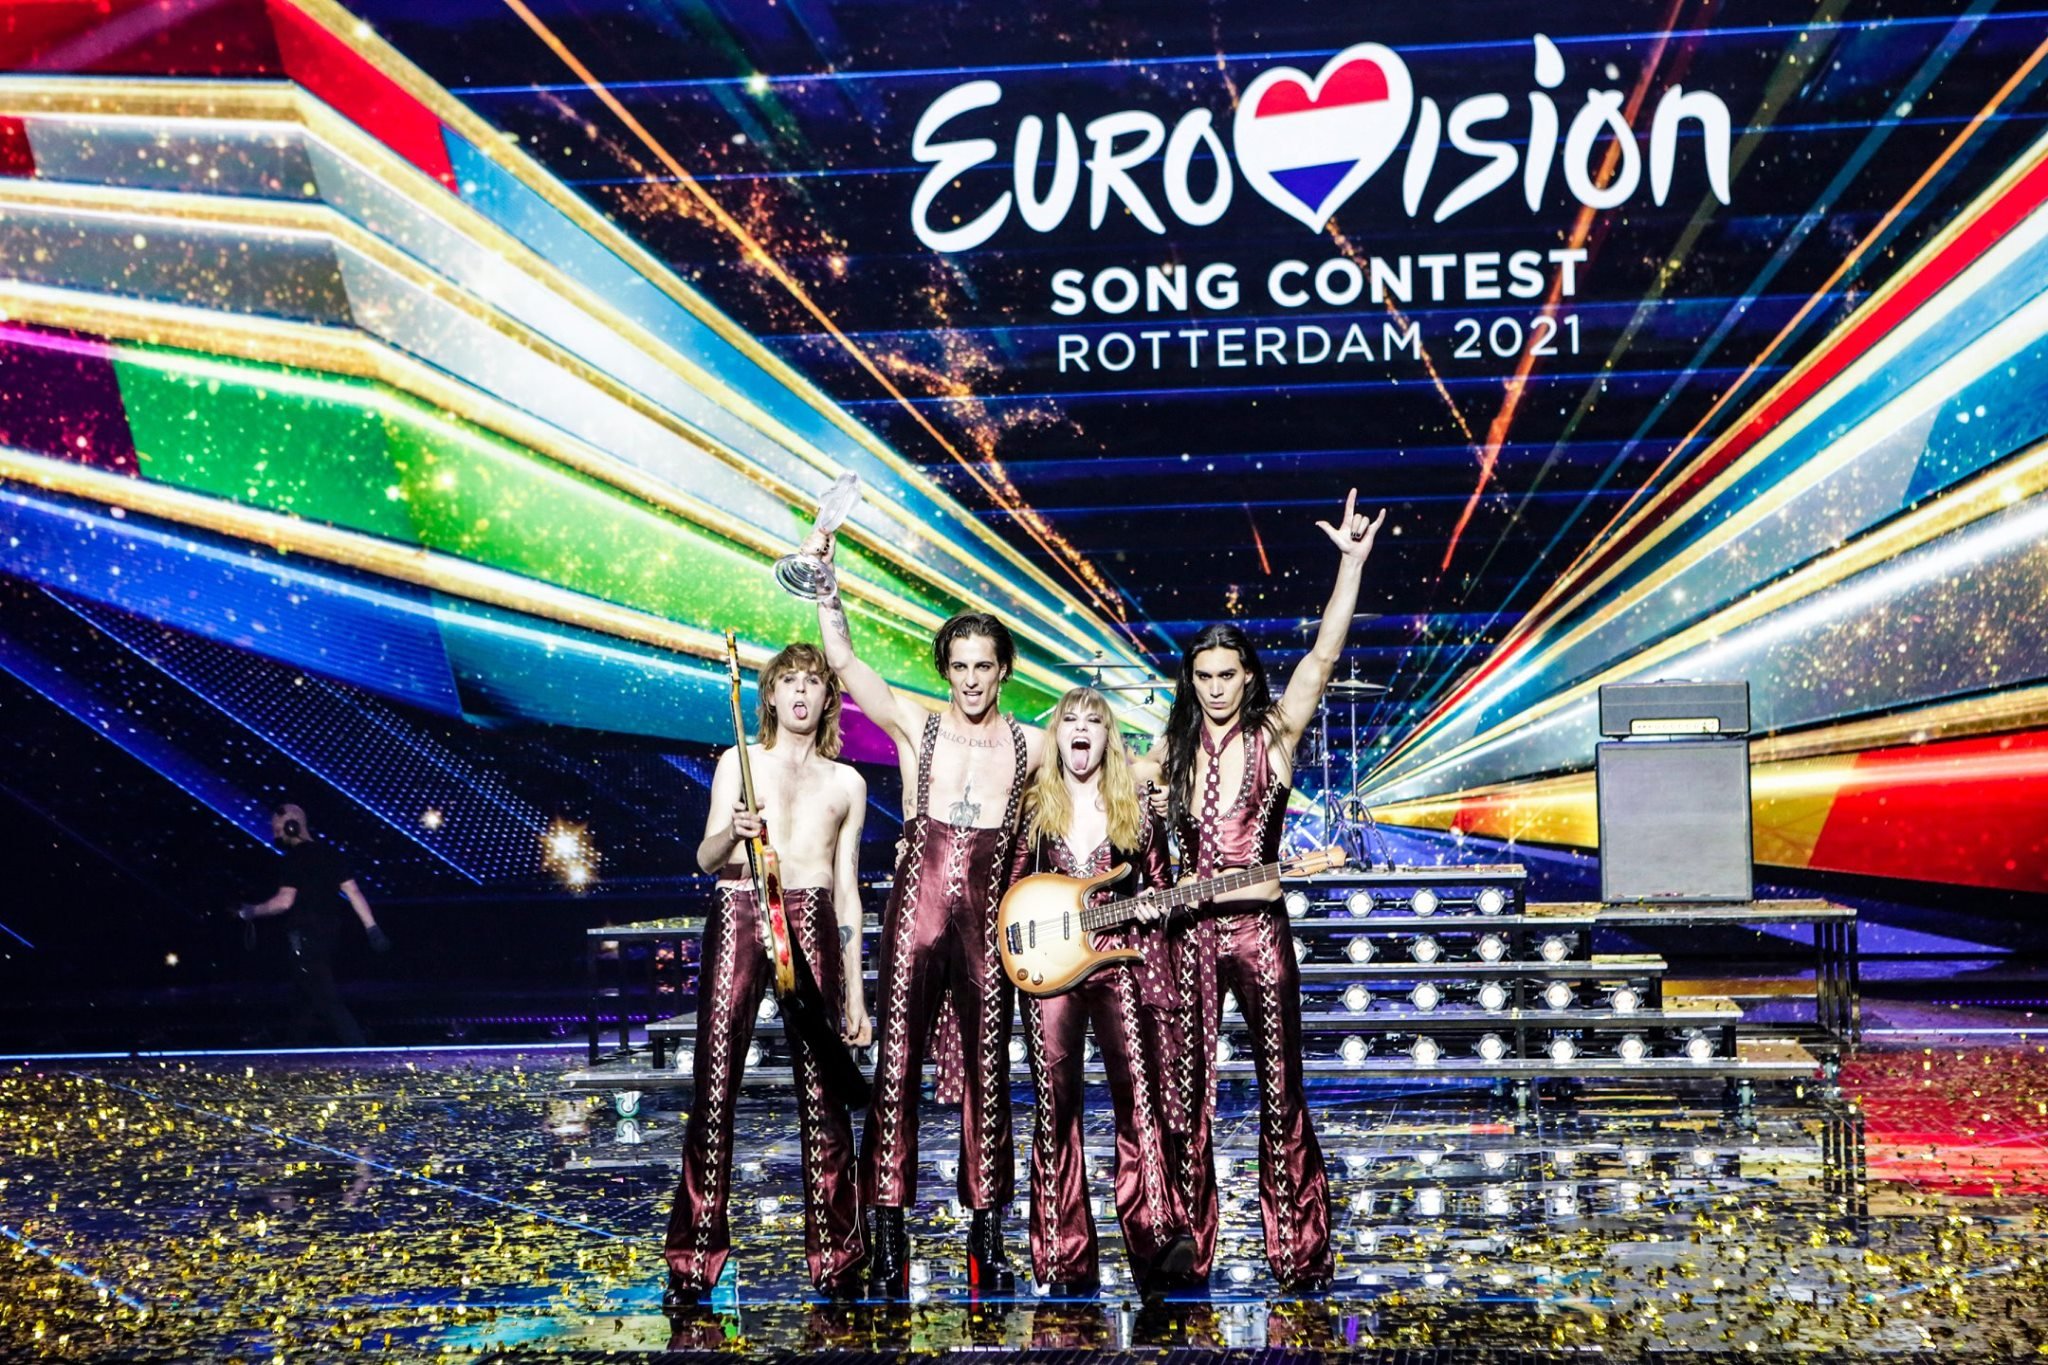 Eurovision 2022: Alessandria si candida. Assessore Fteita: “Un’opportunità, ci vogliamo provare”